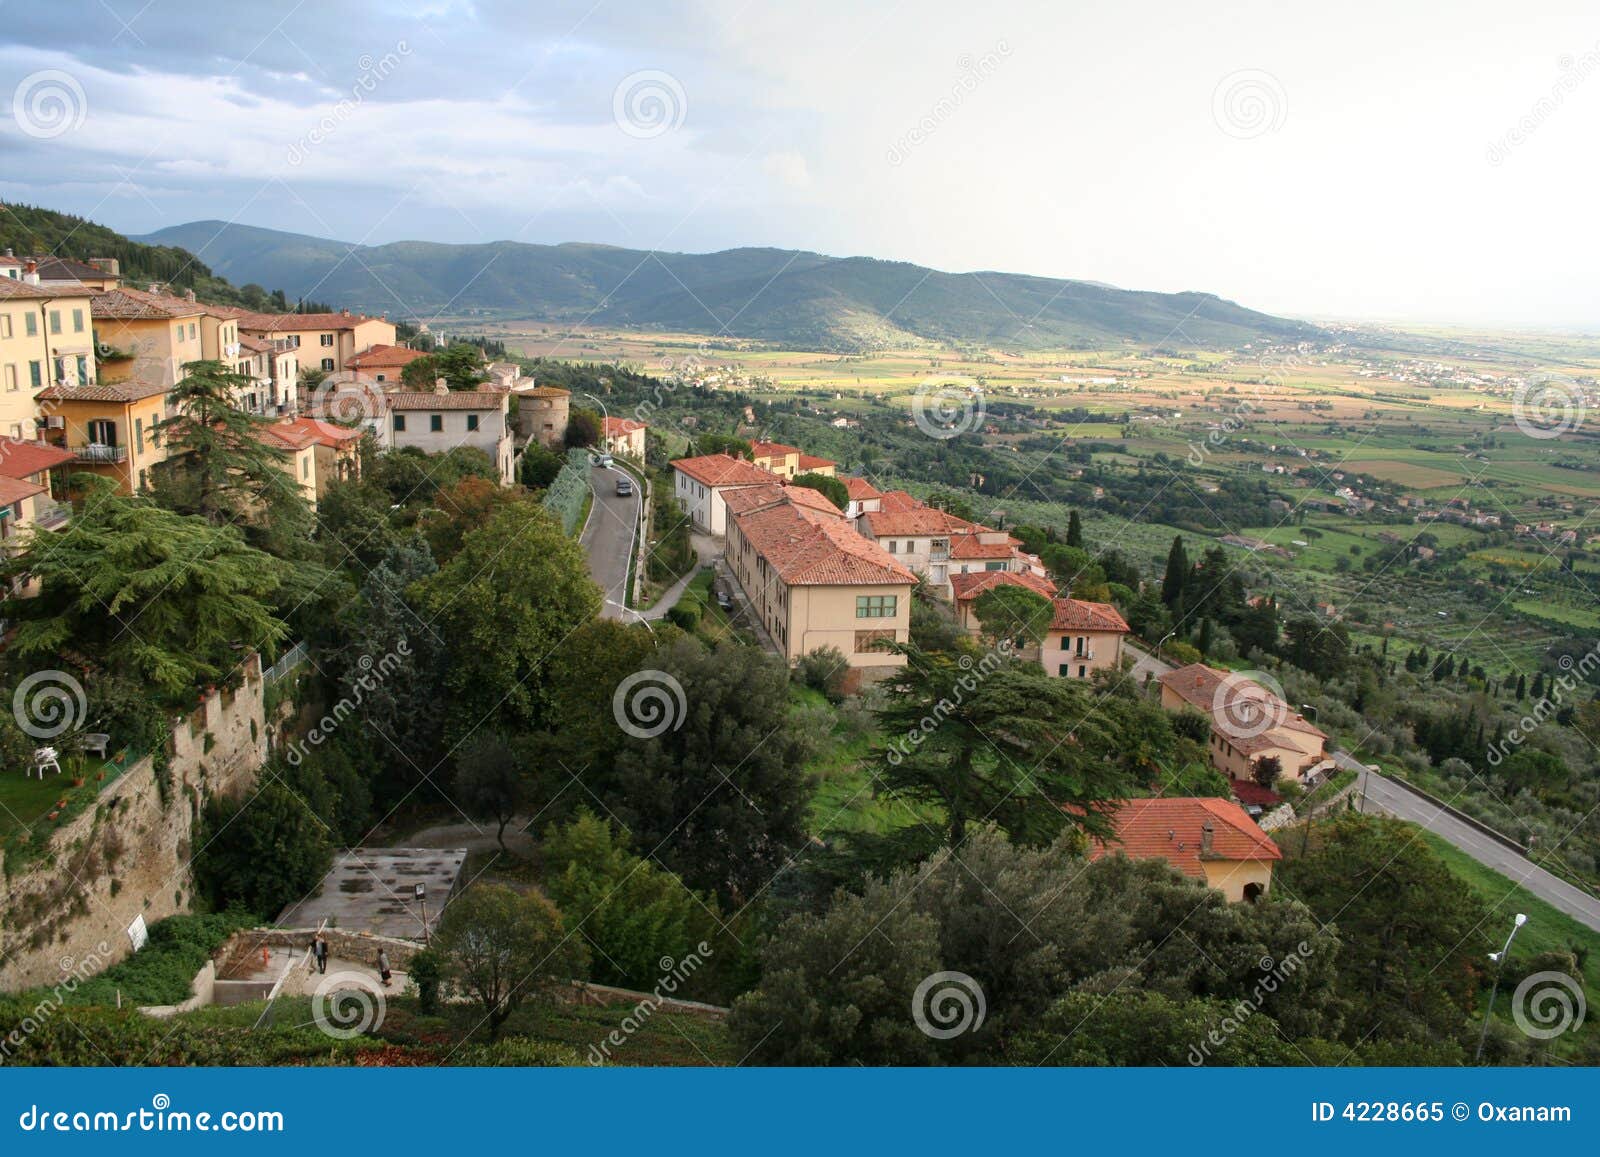 Italy. Toscana. Panorama of Cortona Stock Image - Image of clay ...